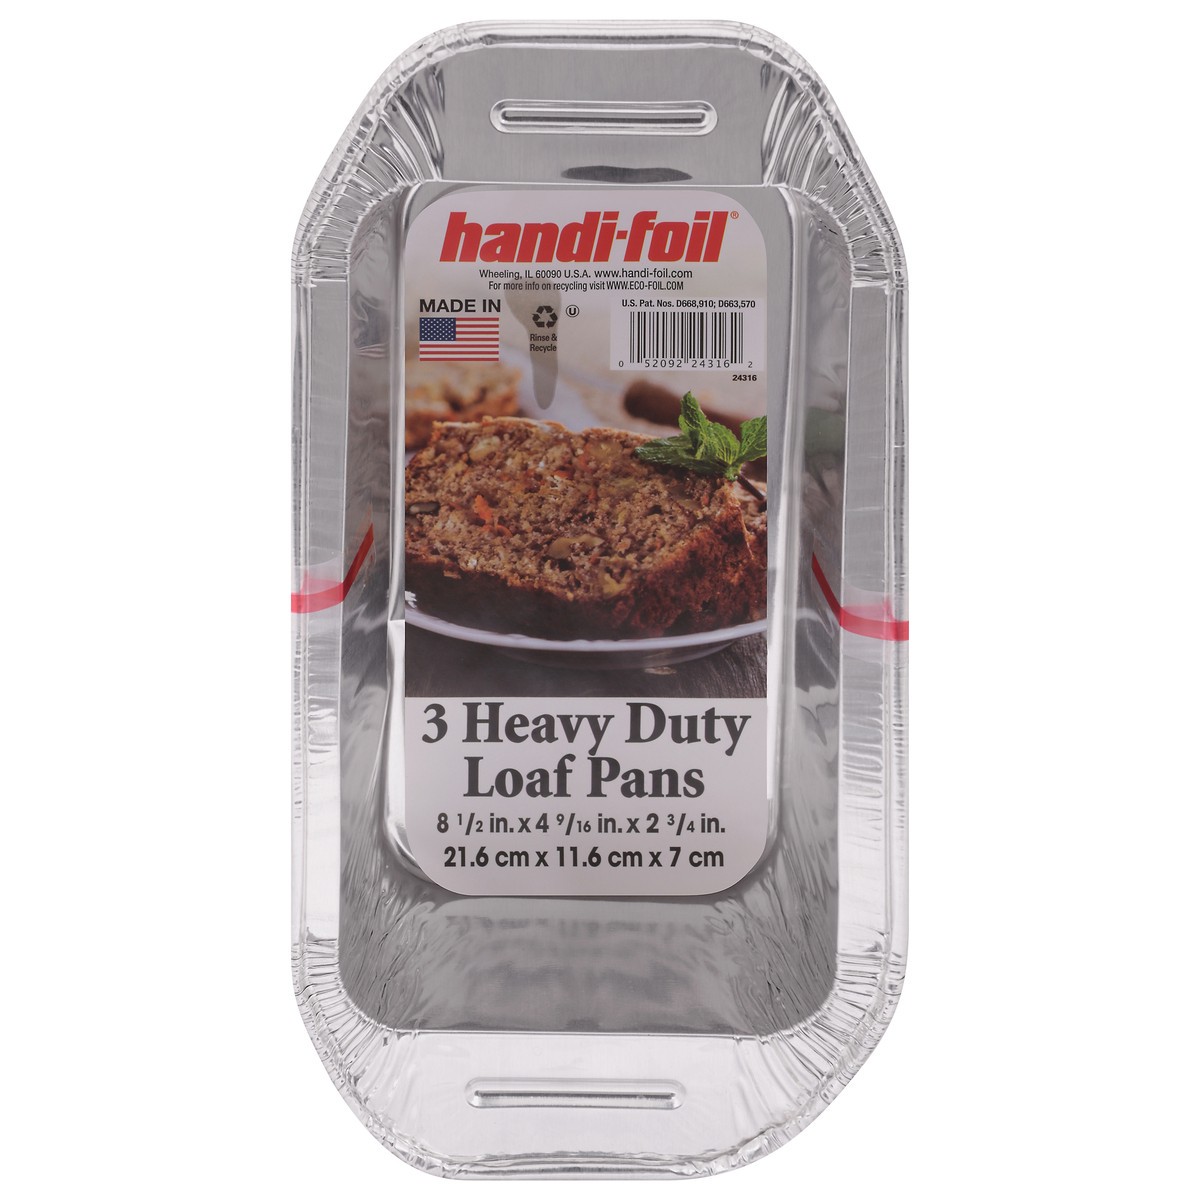 slide 1 of 9, Handi-foil Heavy Duty Loaf Pans 3 ea, 3 ct